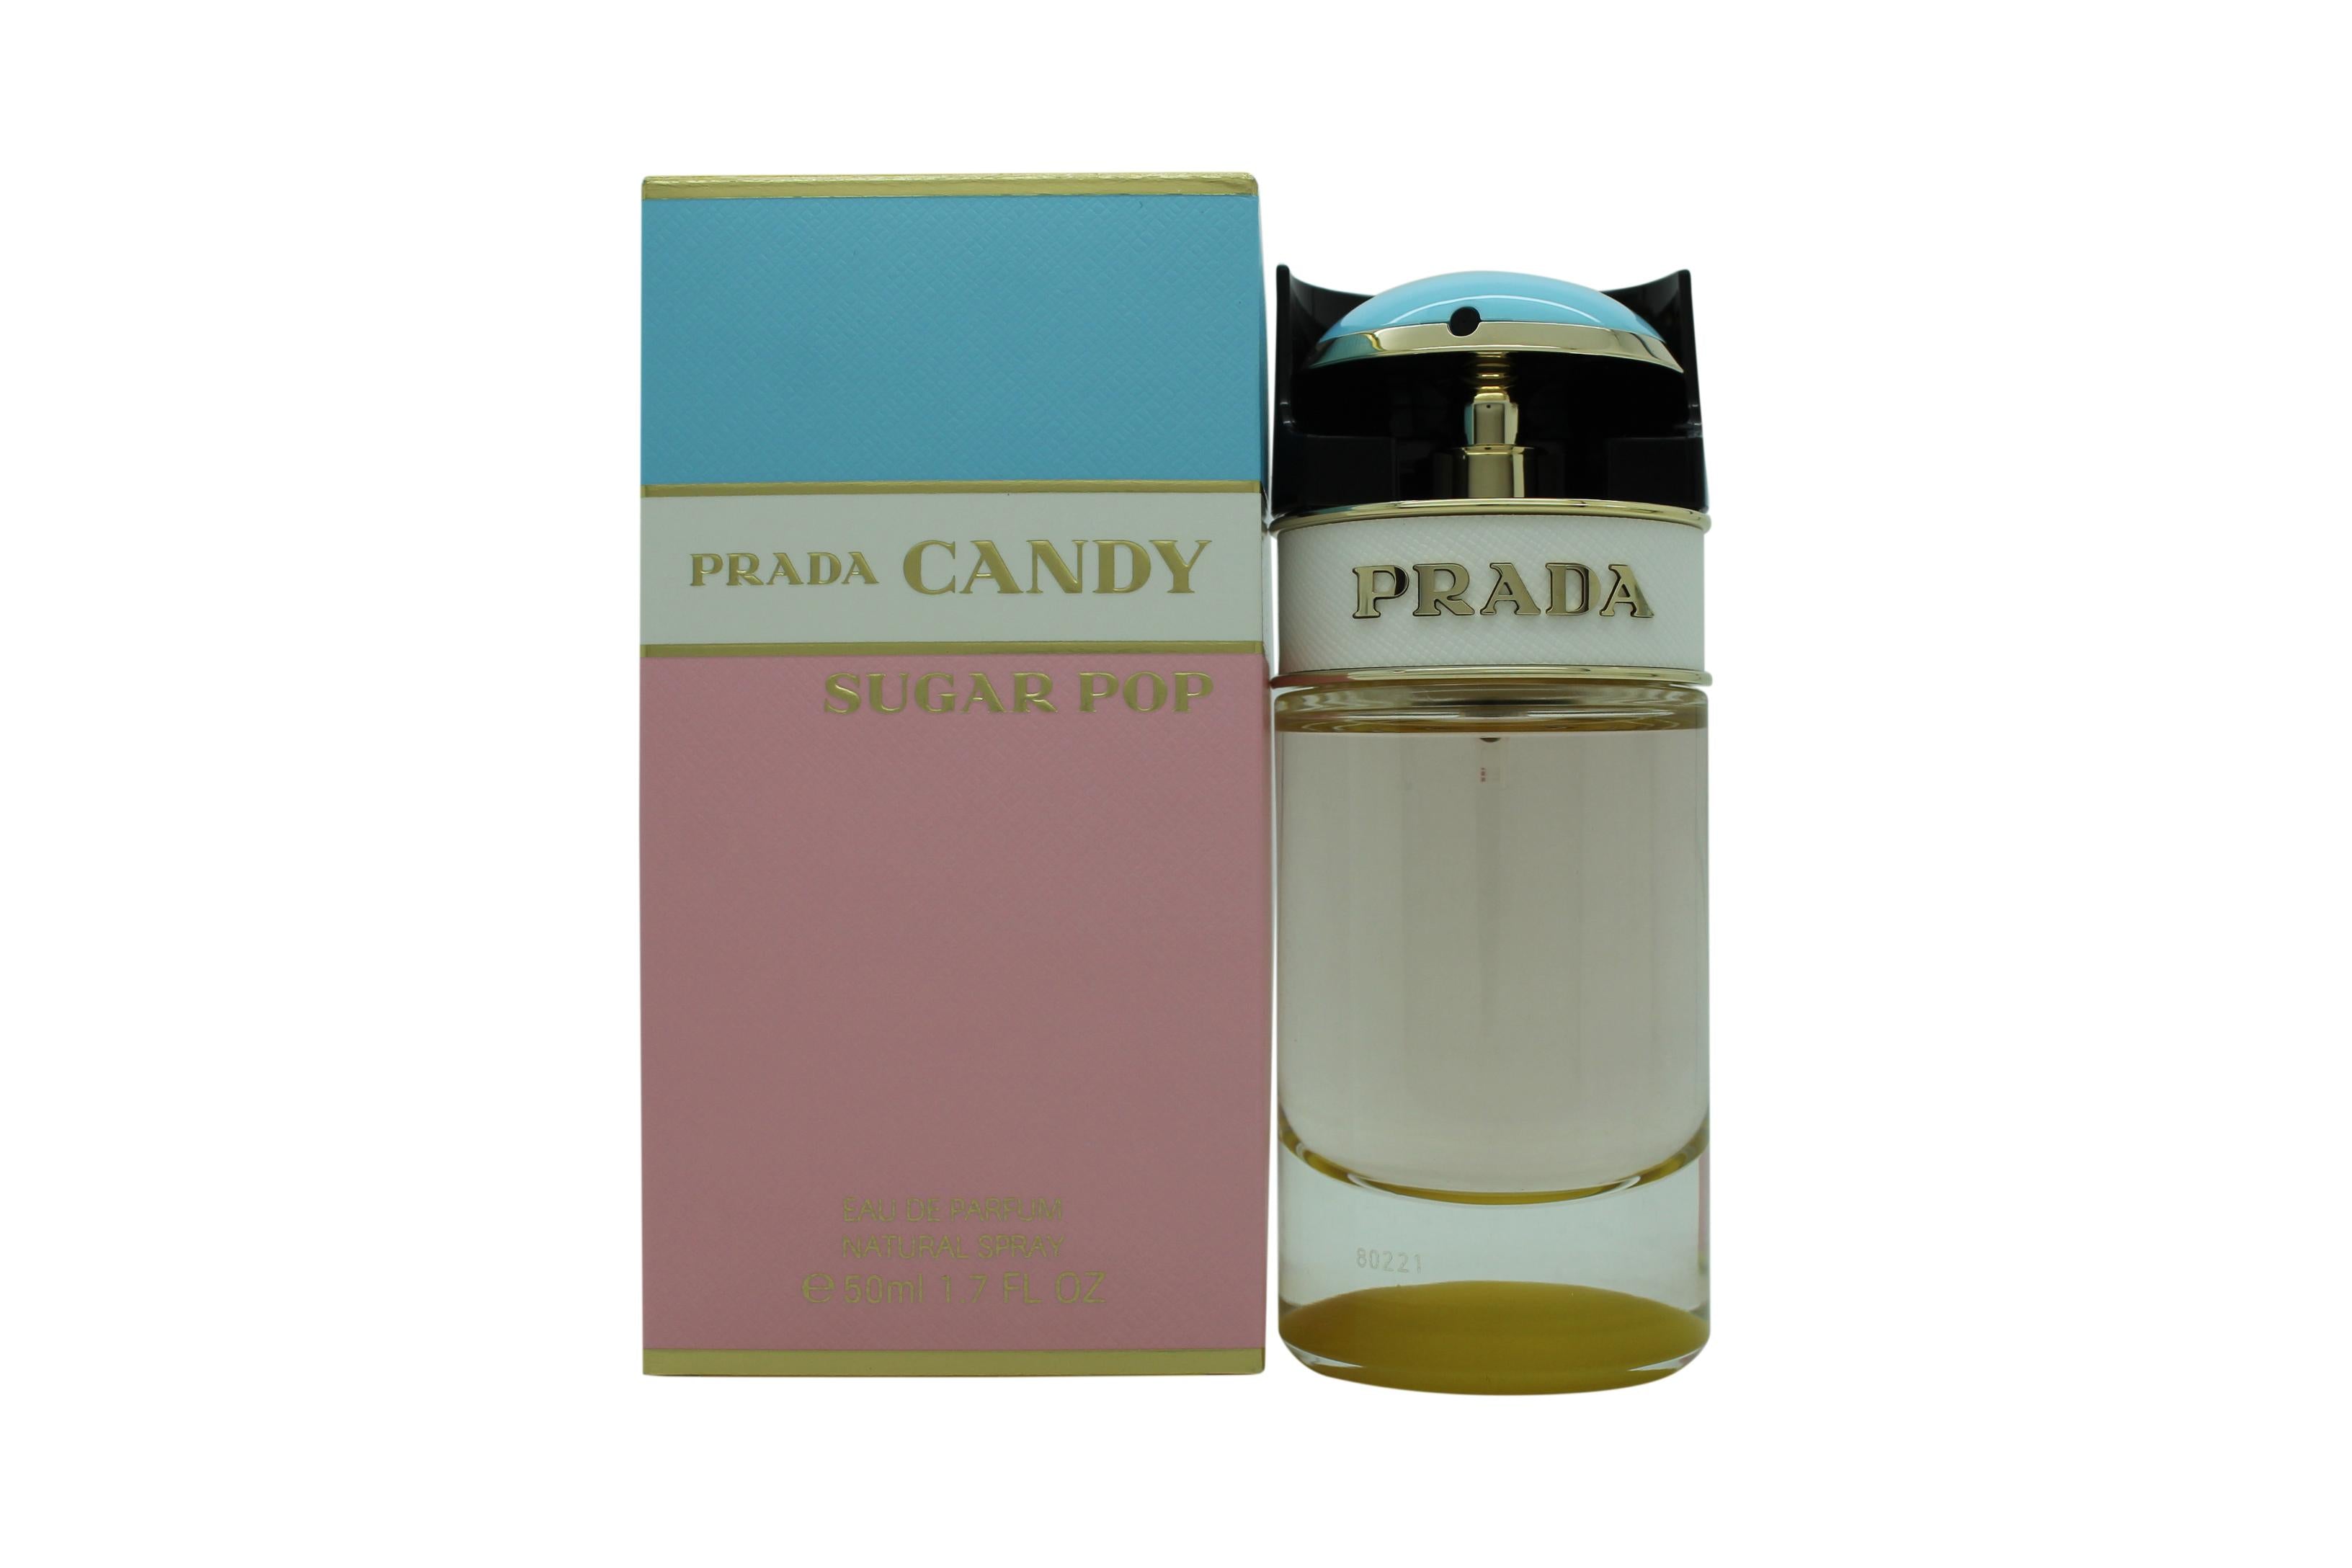 View Prada Candy Sugar Pop Eau de Parfum 50ml Spray information